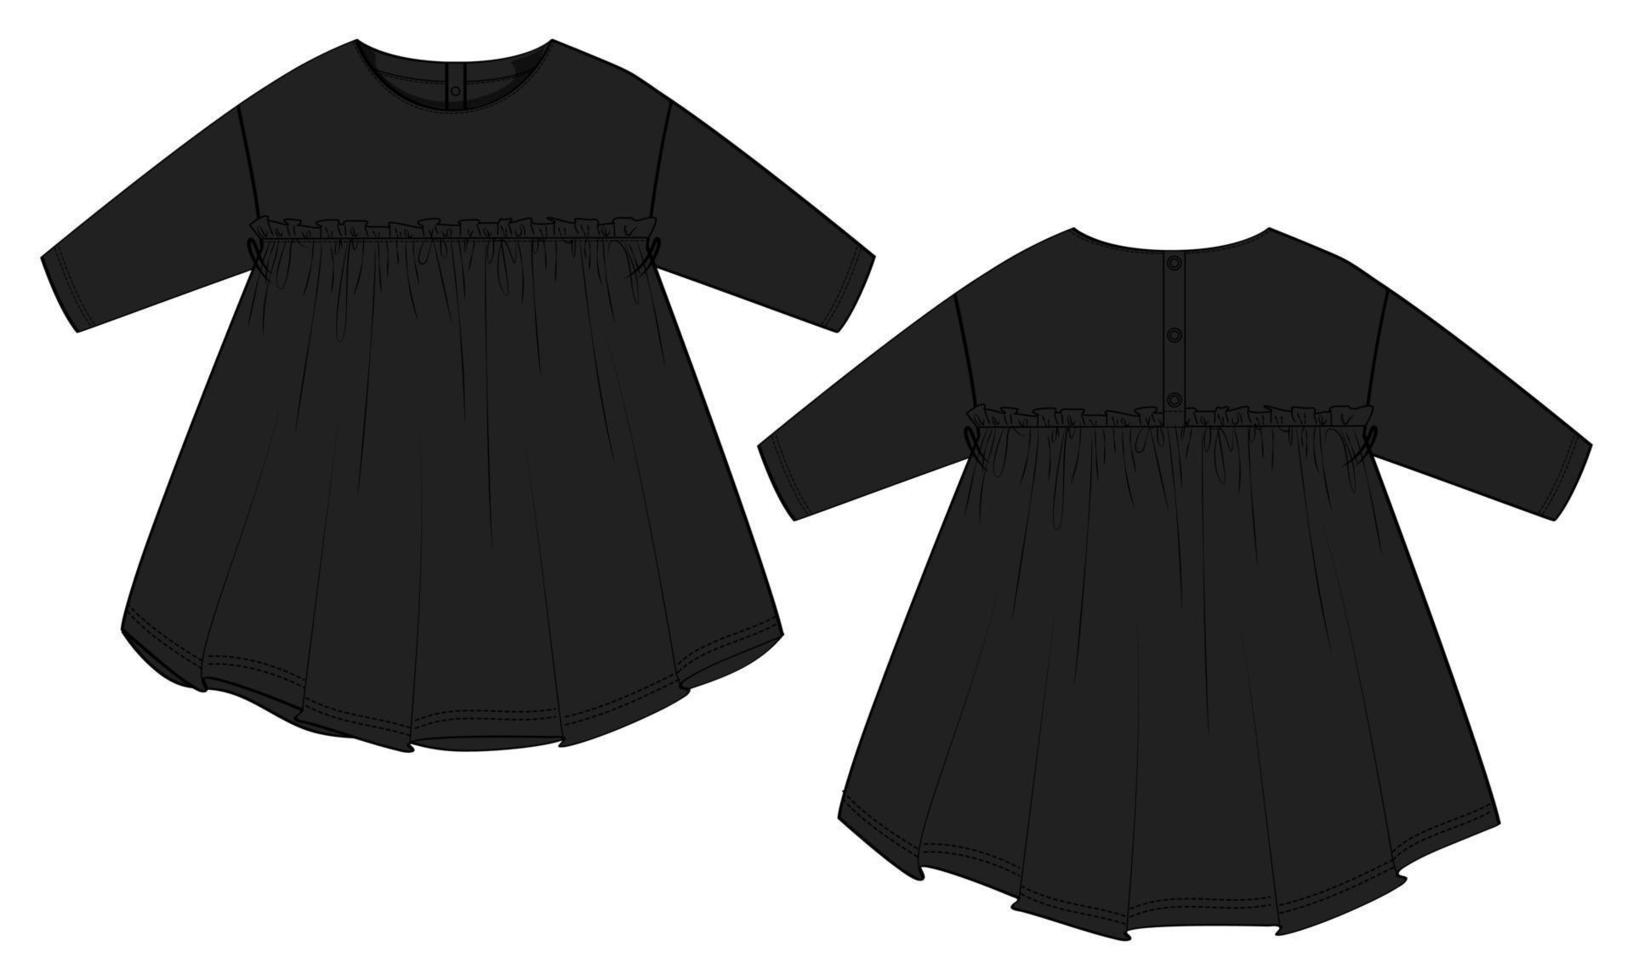 Baby Mädchen Kleid Design technische flache Skizze Vektor Illustration Vorlage. Bekleidung Mock-up Vorder- und Rückansicht